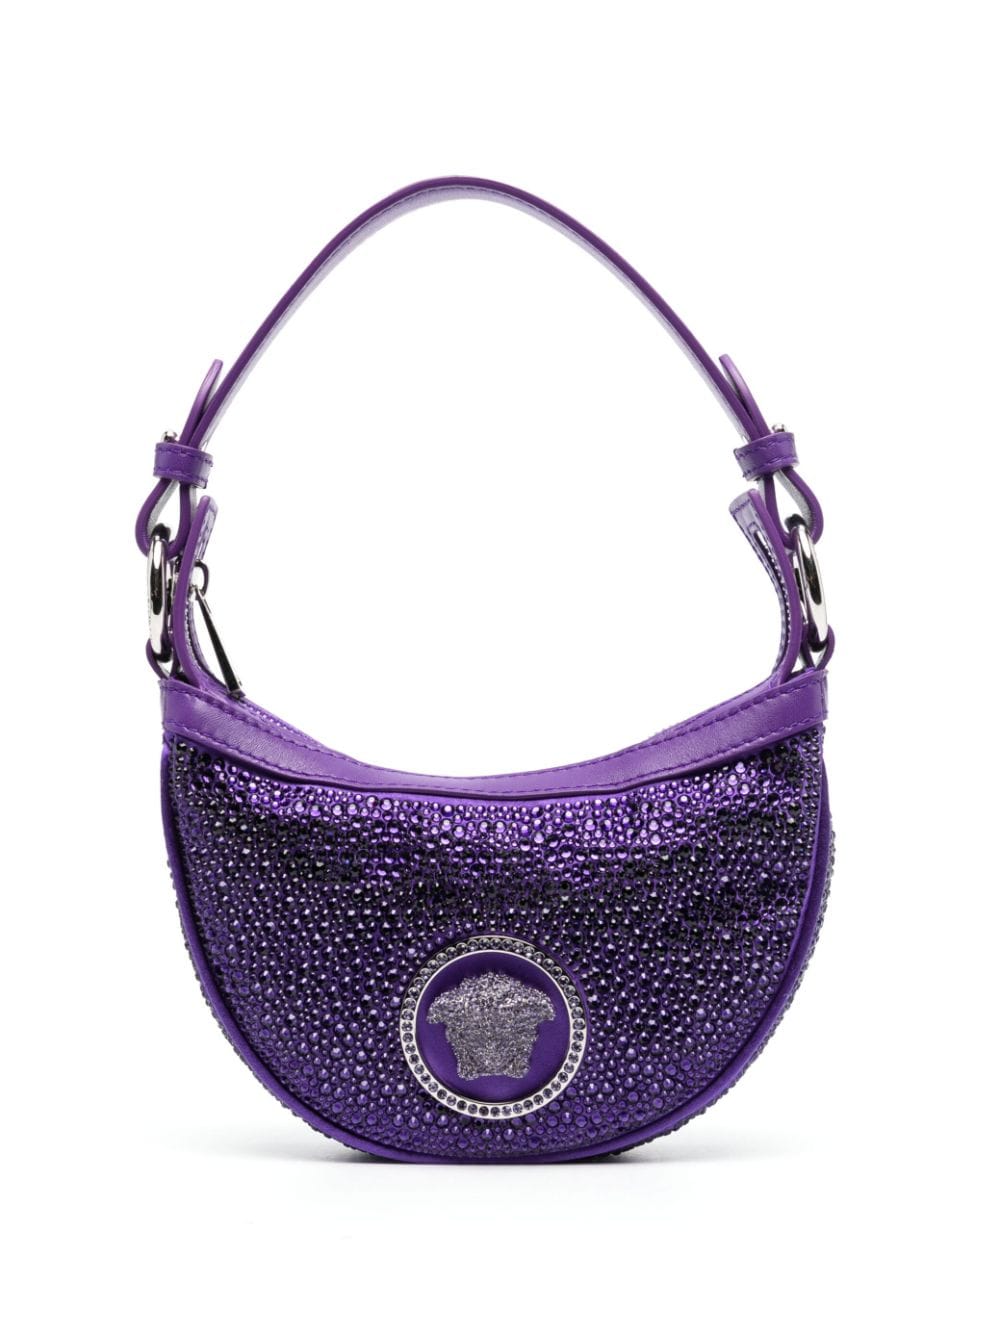 Versace Handtasche mit Medusa - Violett von Versace